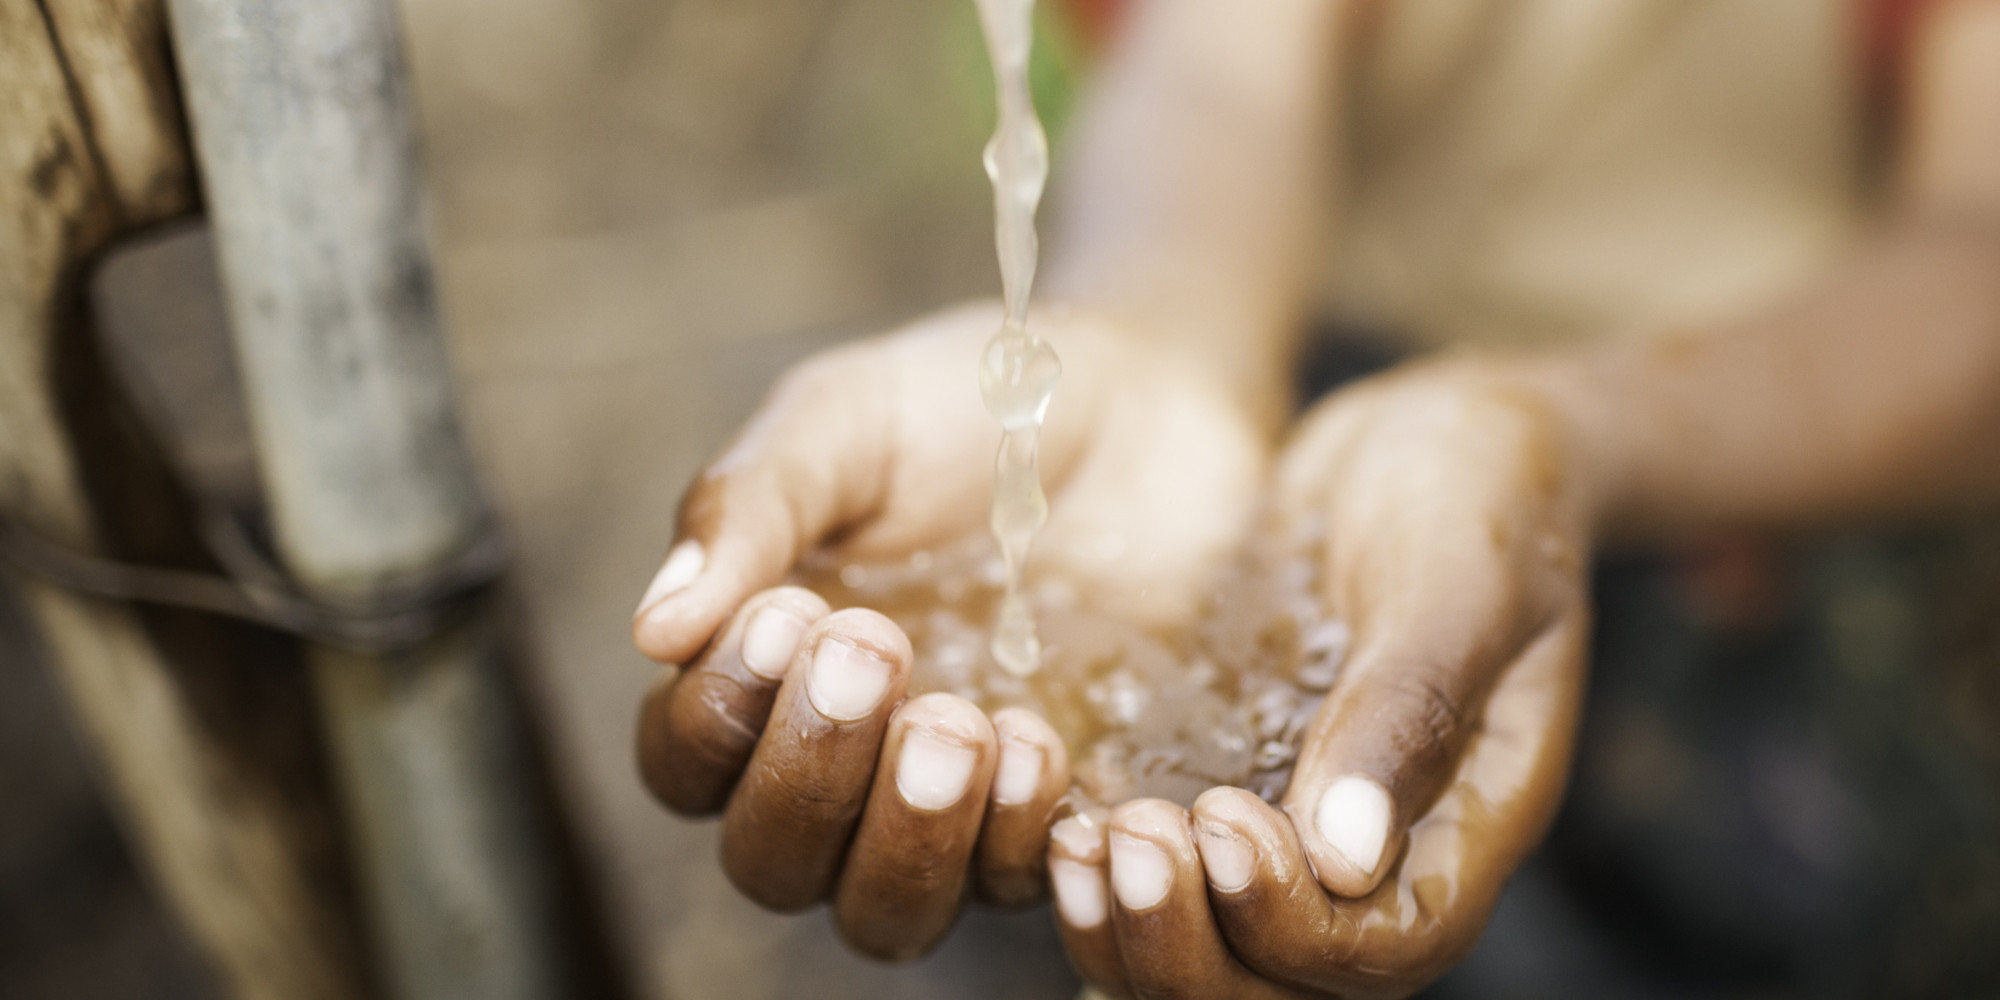 Despite Progress 748 Million Still Lack Access To Clean Water New